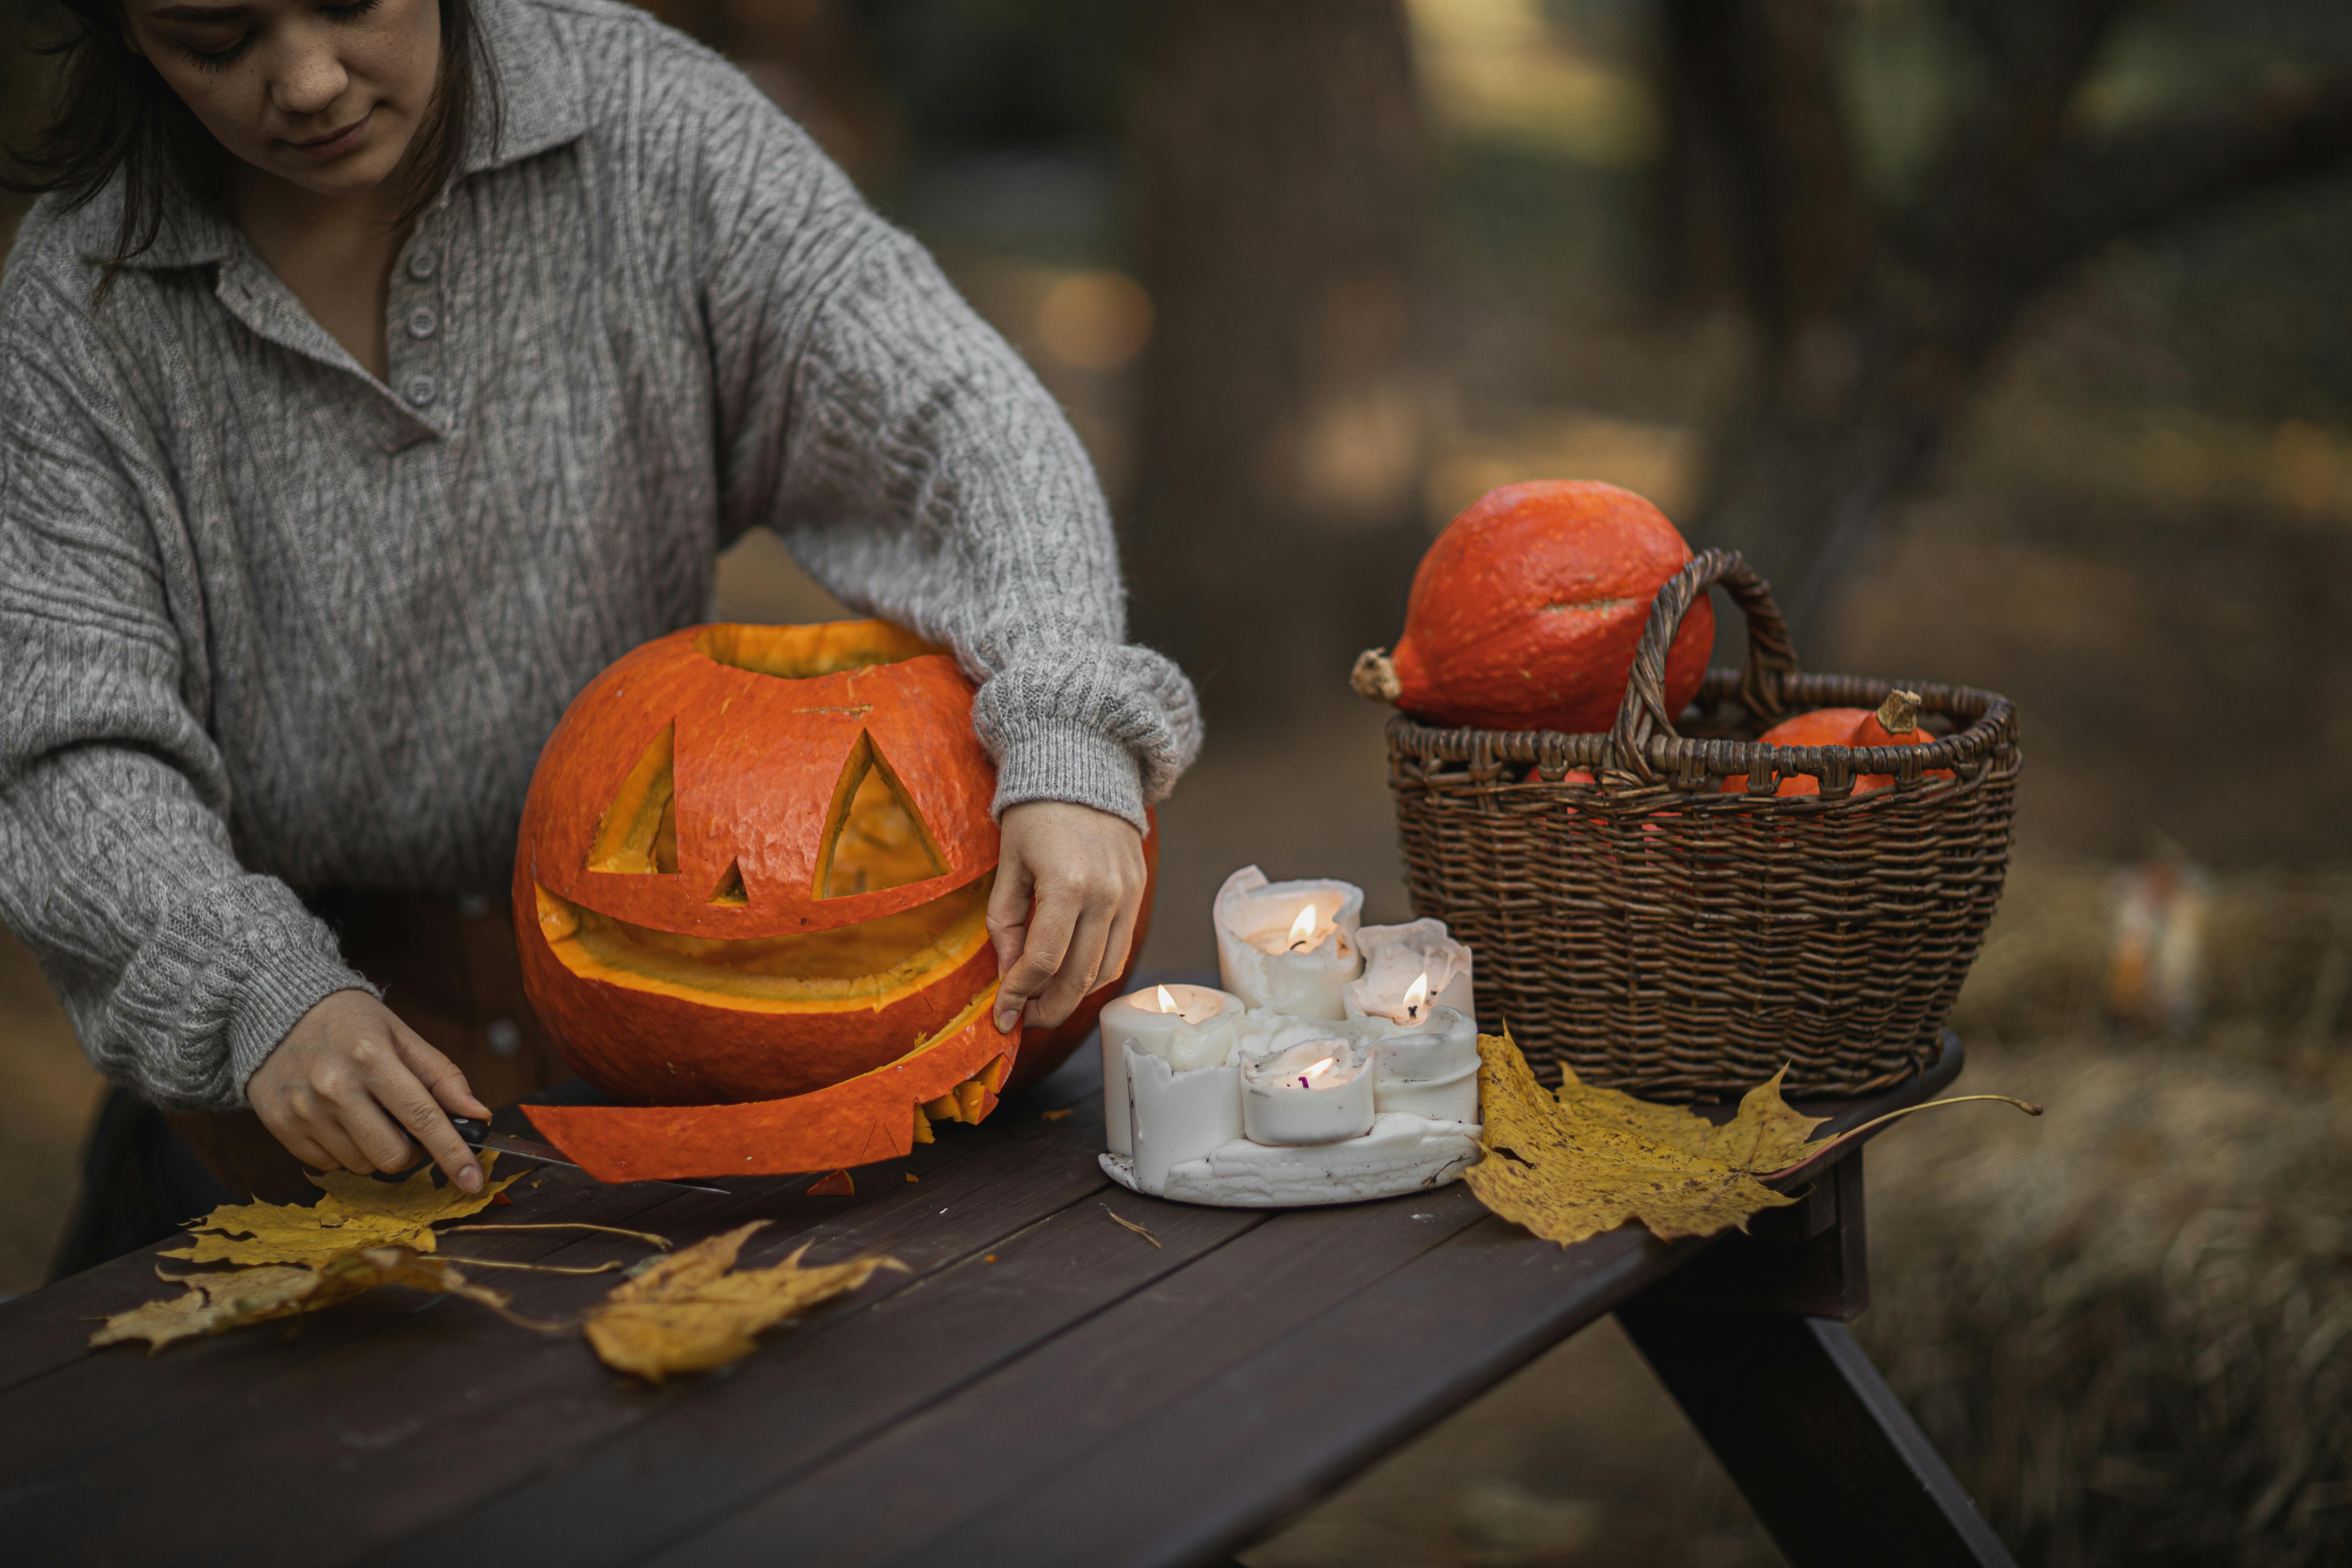 Pumpkin carving at a picnic table